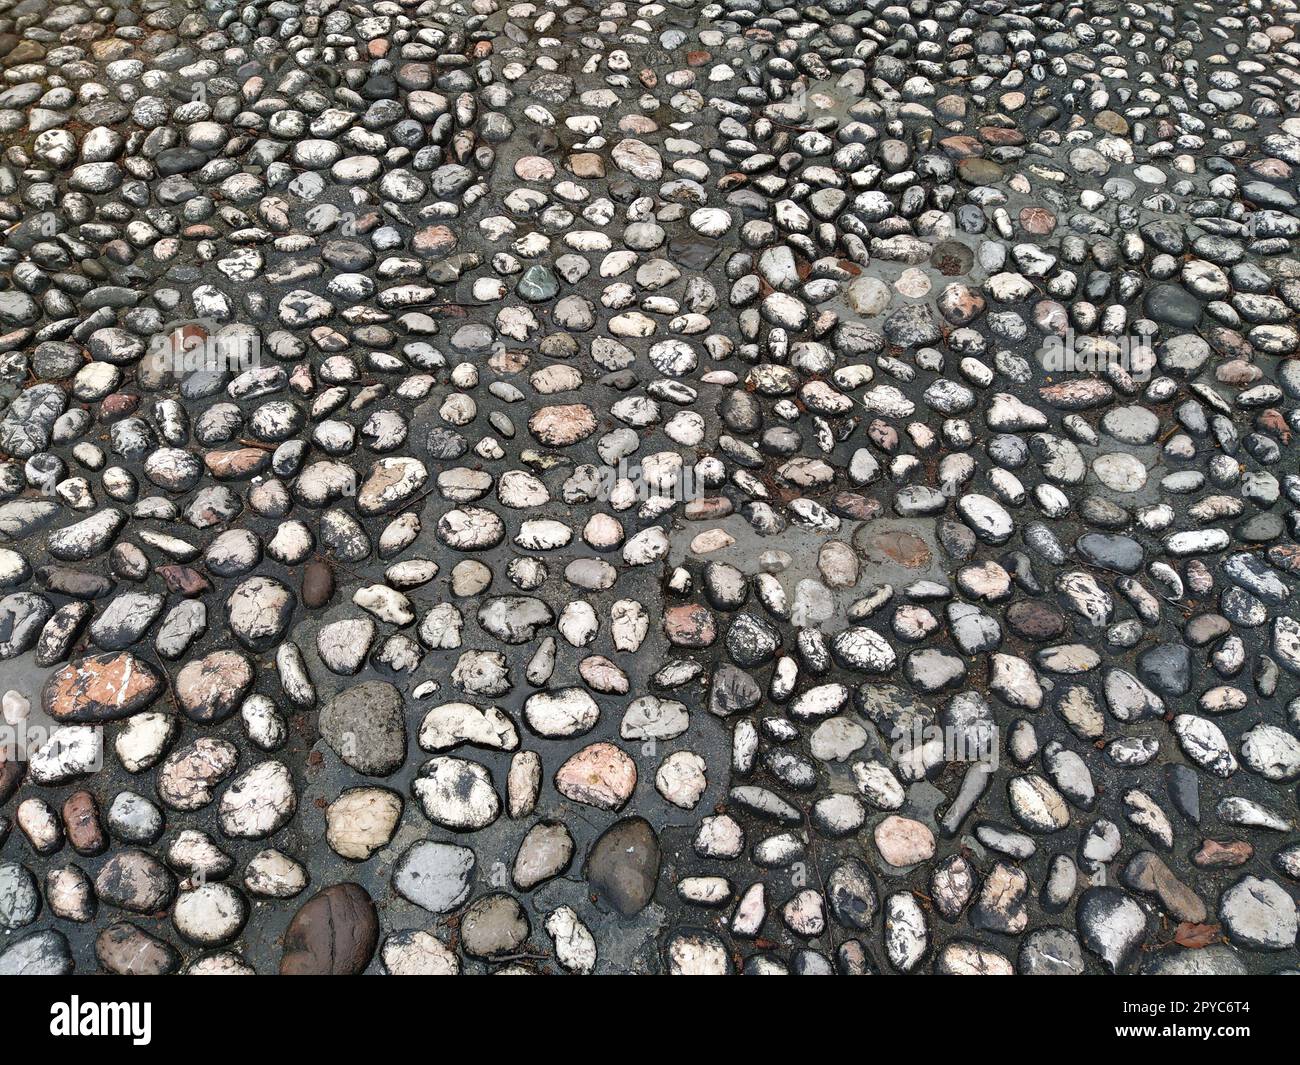 Pietre per pavimentazione in pietre rotonde leggere simili al marmo. Piazza lastricata nel centro storico di Sarajevo, Bosnia ed Erzegovina. Bellissime pietre bagnate e lucide dopo la pioggia. Primo piano con luce naturale Foto Stock